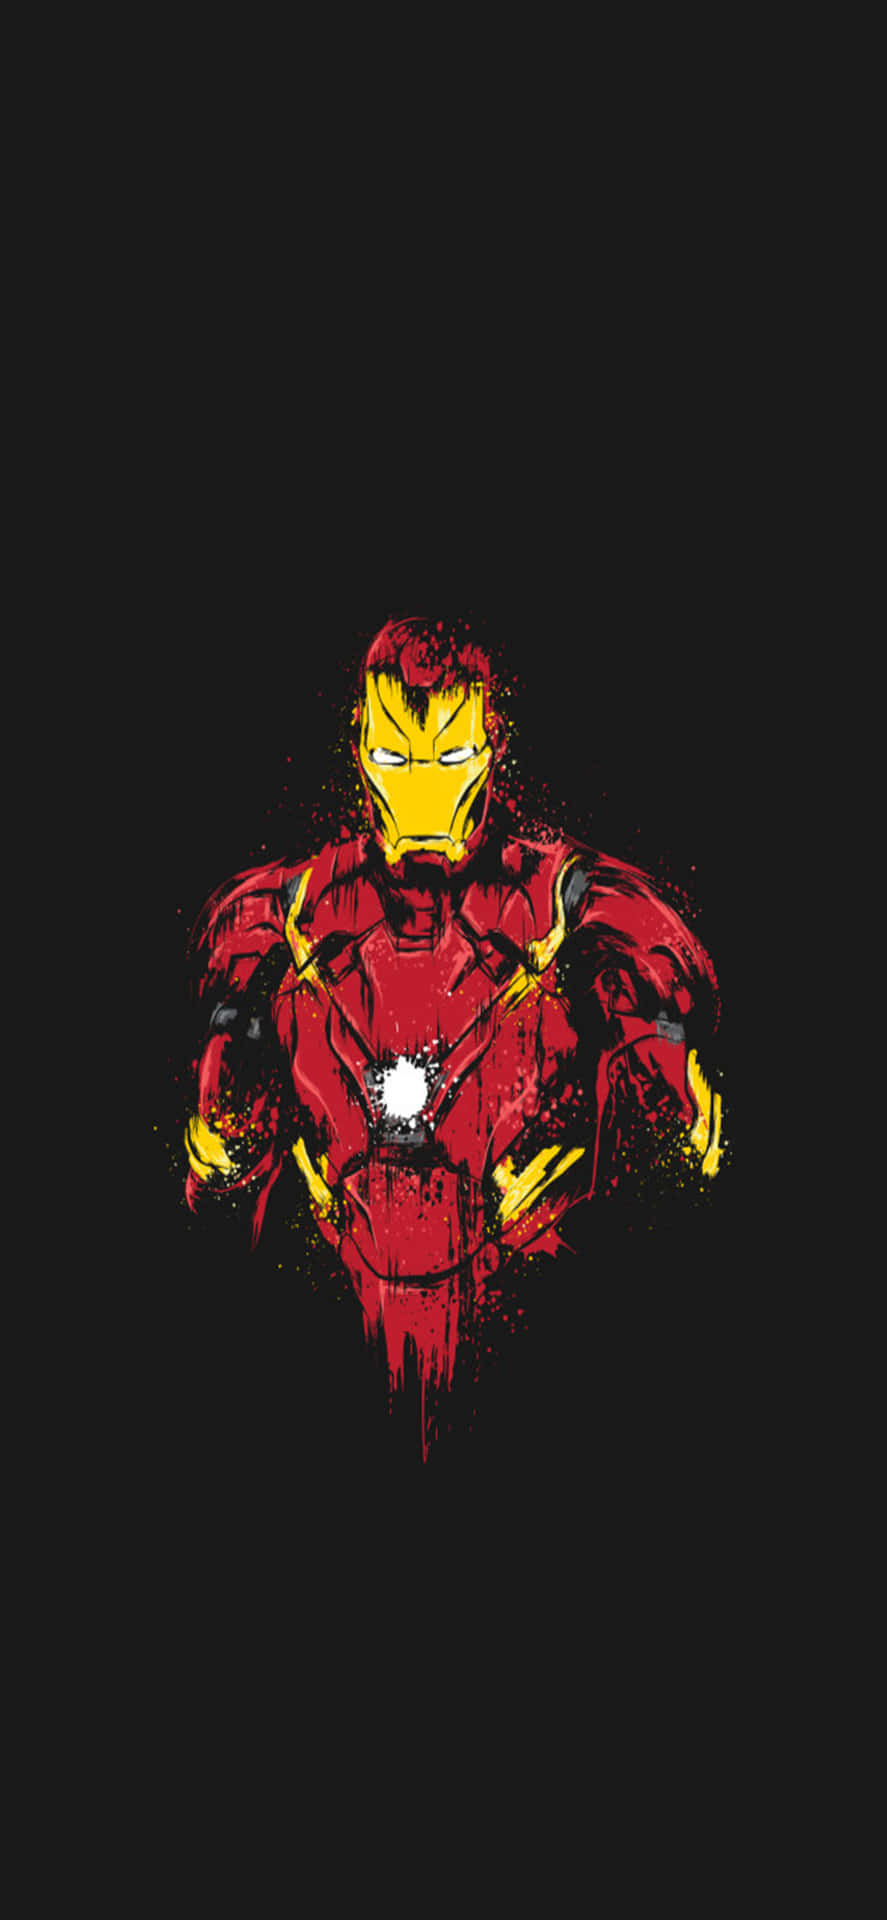 Iphone X Iron Man Background Iron Man Damaged Suit Black Backdrop